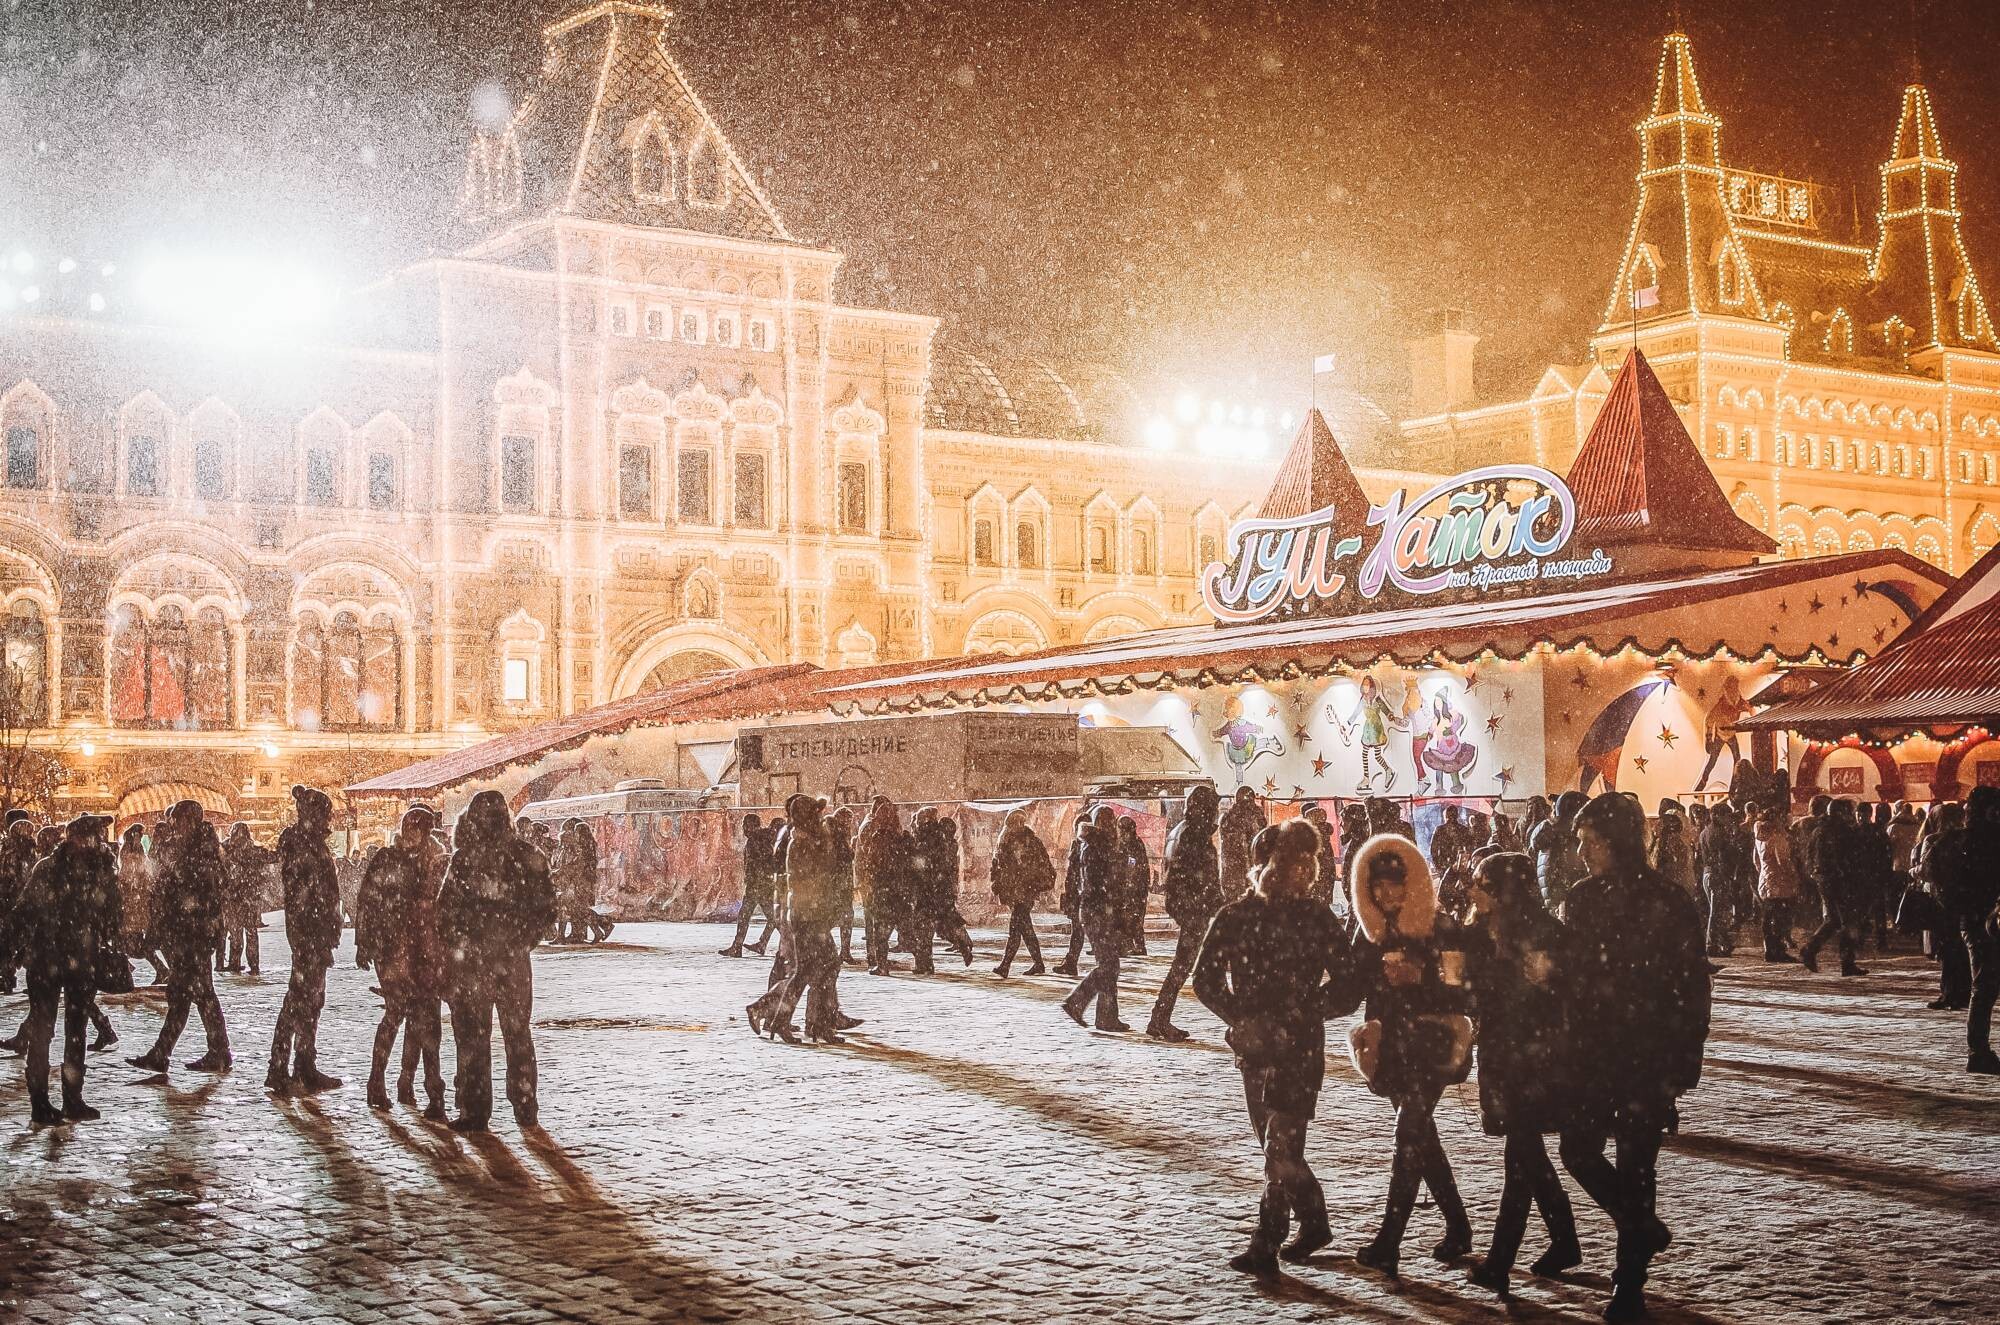 Vzhůru do Budapešti. Nejkrásnější vánoční trh najdete tam